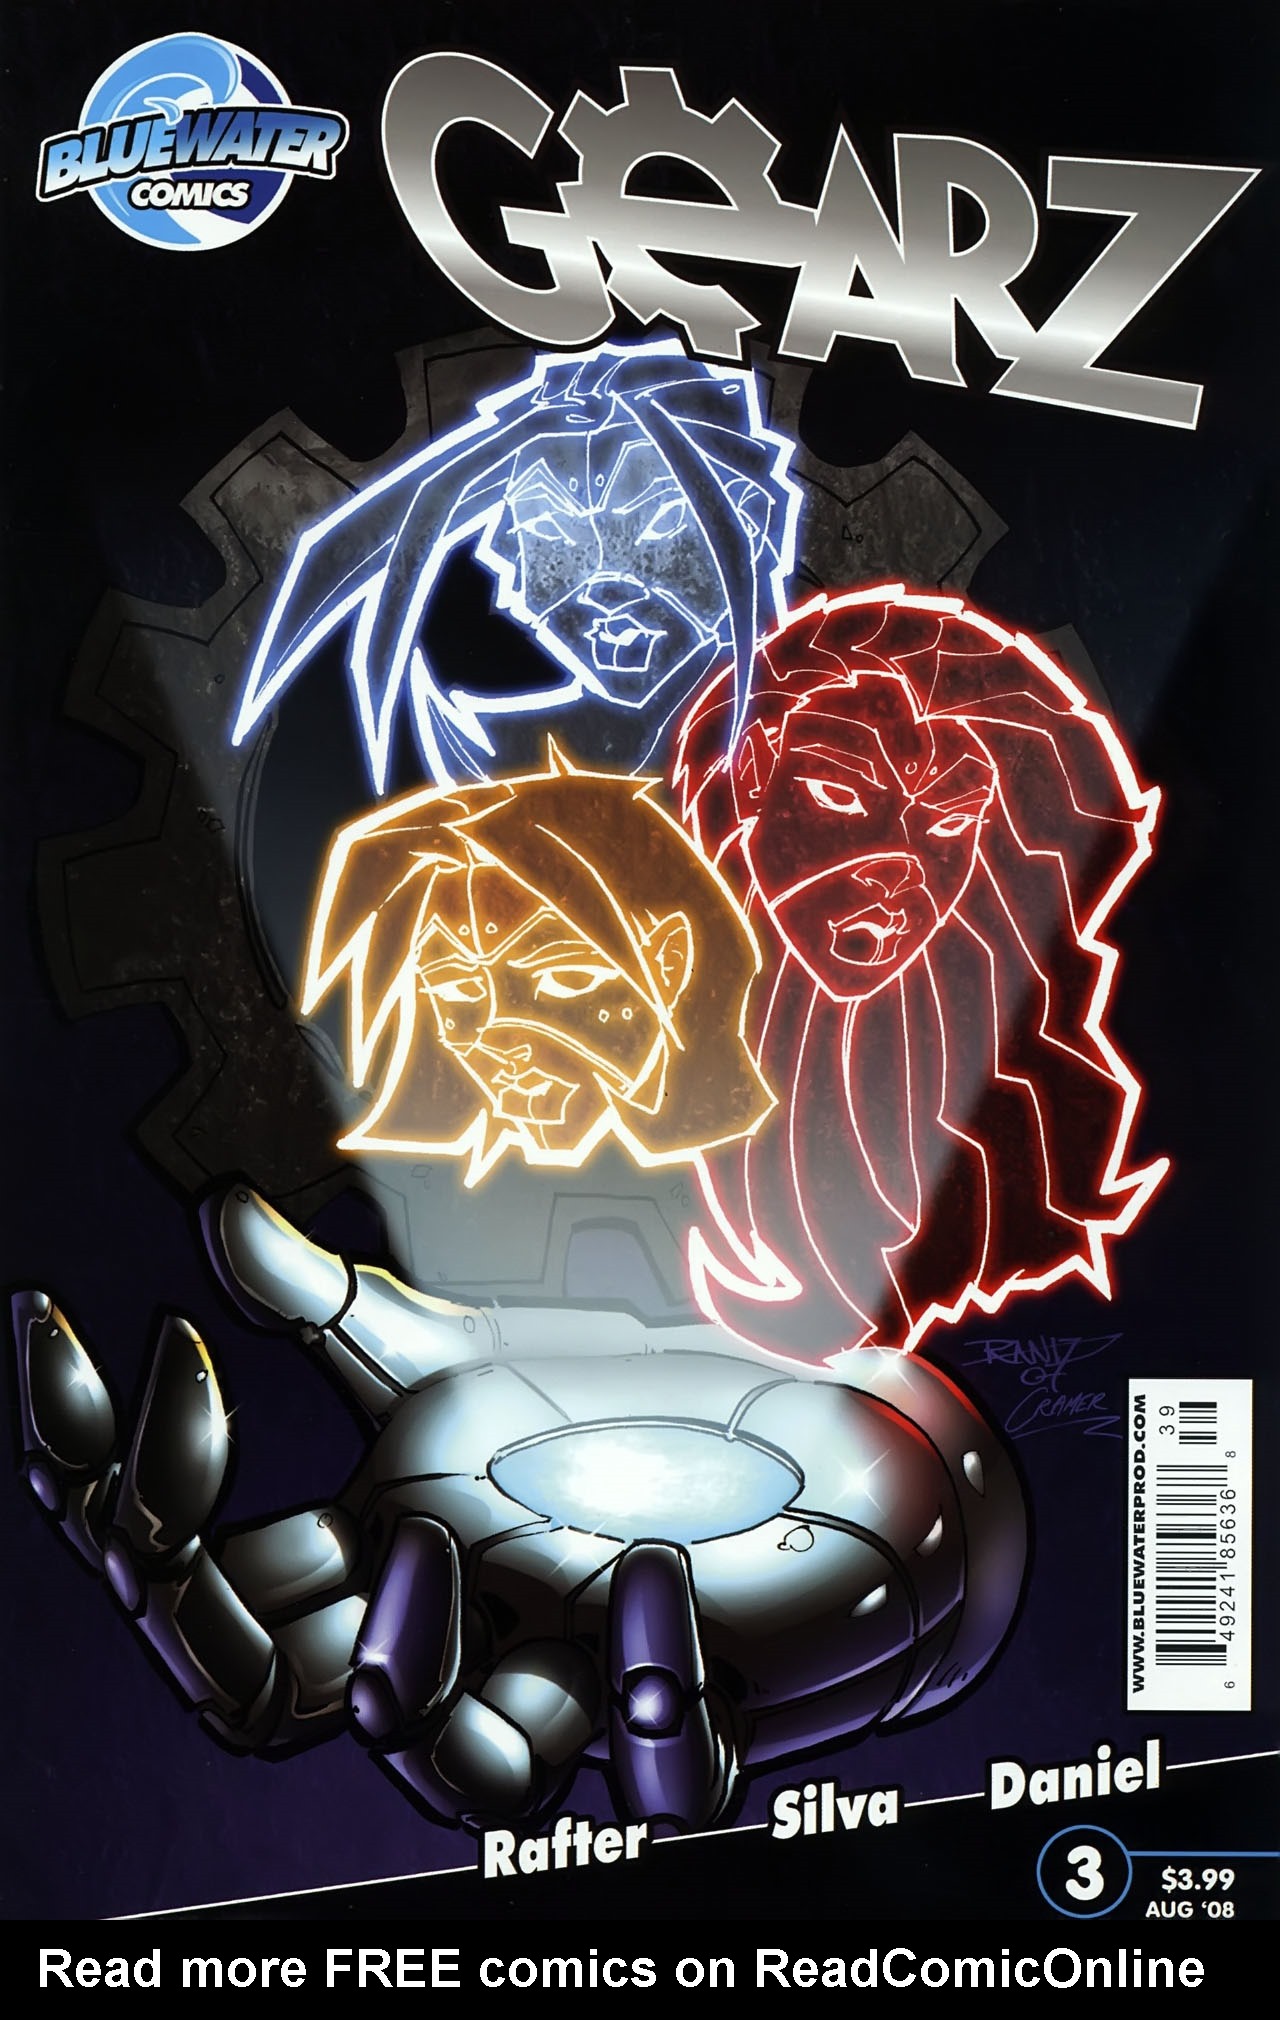 Read online Gearz comic -  Issue #3 - 1